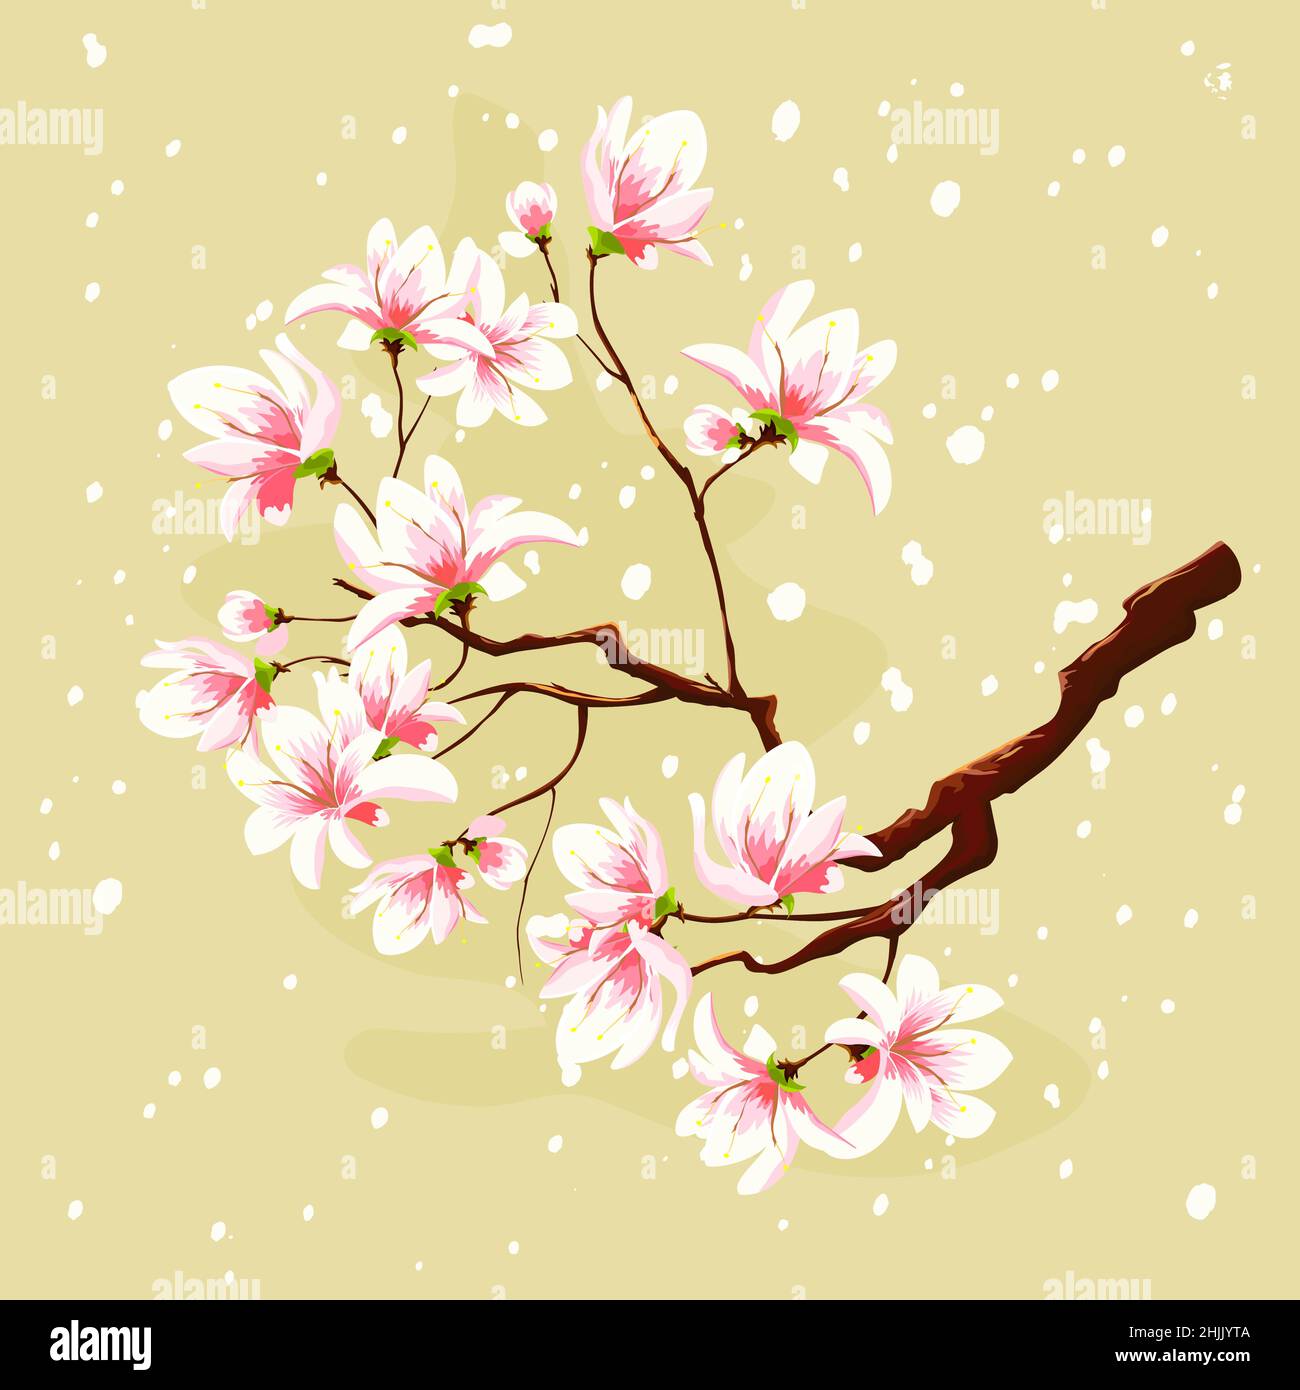 Blühender Sakura-Zweig auf einem weichen pastellfarbenen Hintergrund. Rosa zarte Blüten auf einem Baumzweig. Stock Vektor